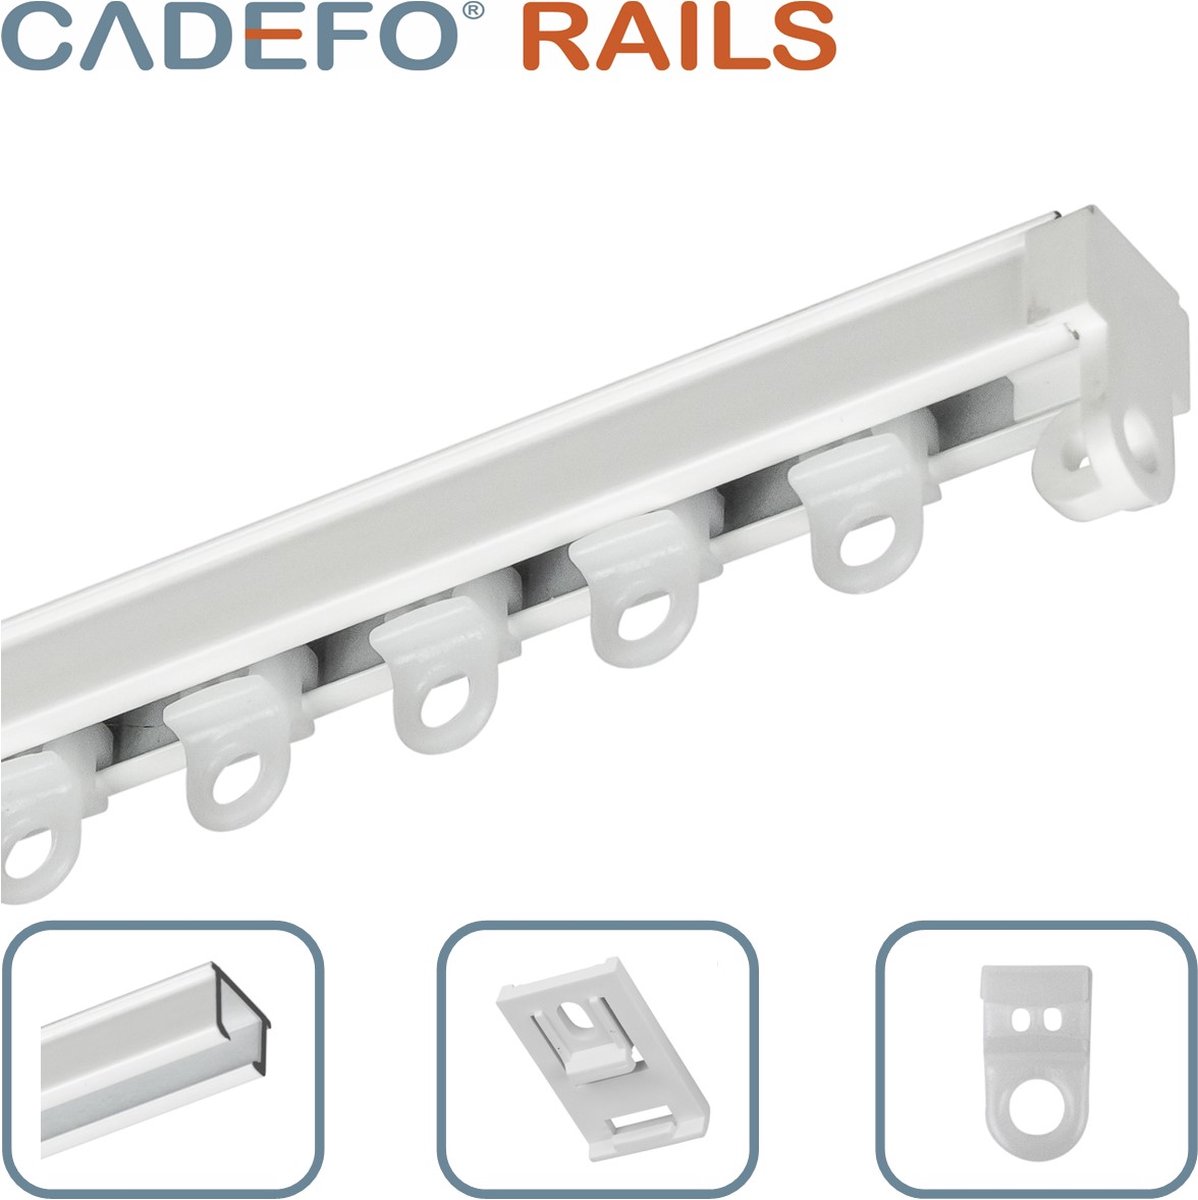 CADEFO RAILS (201 - 250 cm) Gordijnrails - Compleet op maat! - UIT 1 STUK - Leverbaar tot 6 meter - Plafondbevestiging - Lengte 248 cm